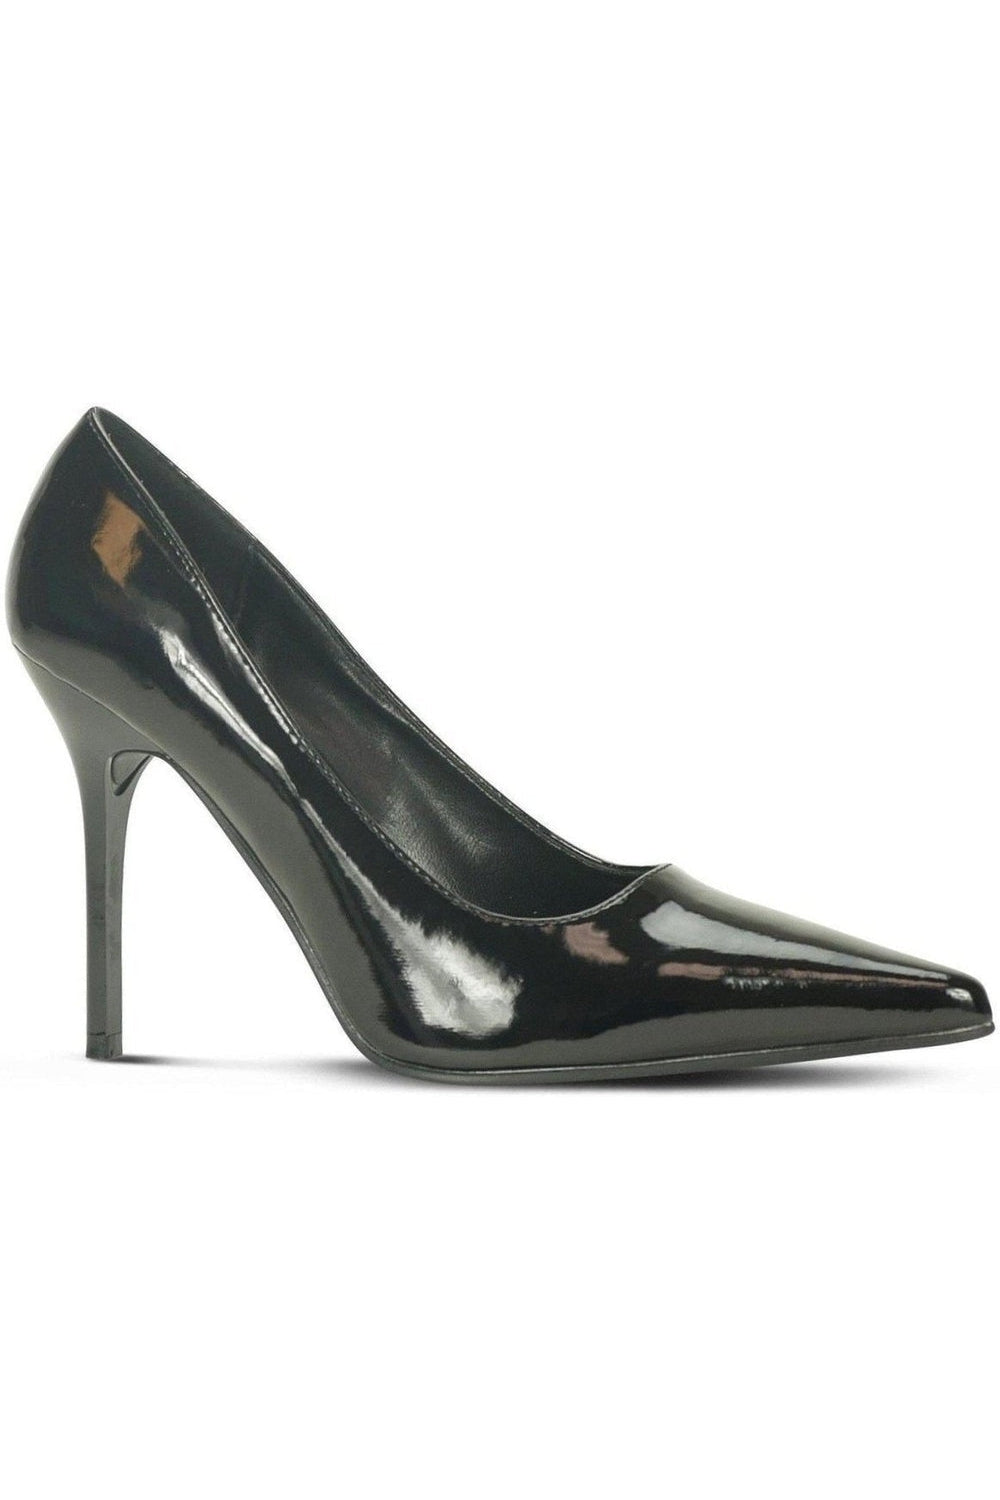 Classic-6004 Stiletto Pump | Black Patent-Sexyshoes Brand-Black-Pumps-SEXYSHOES.COM